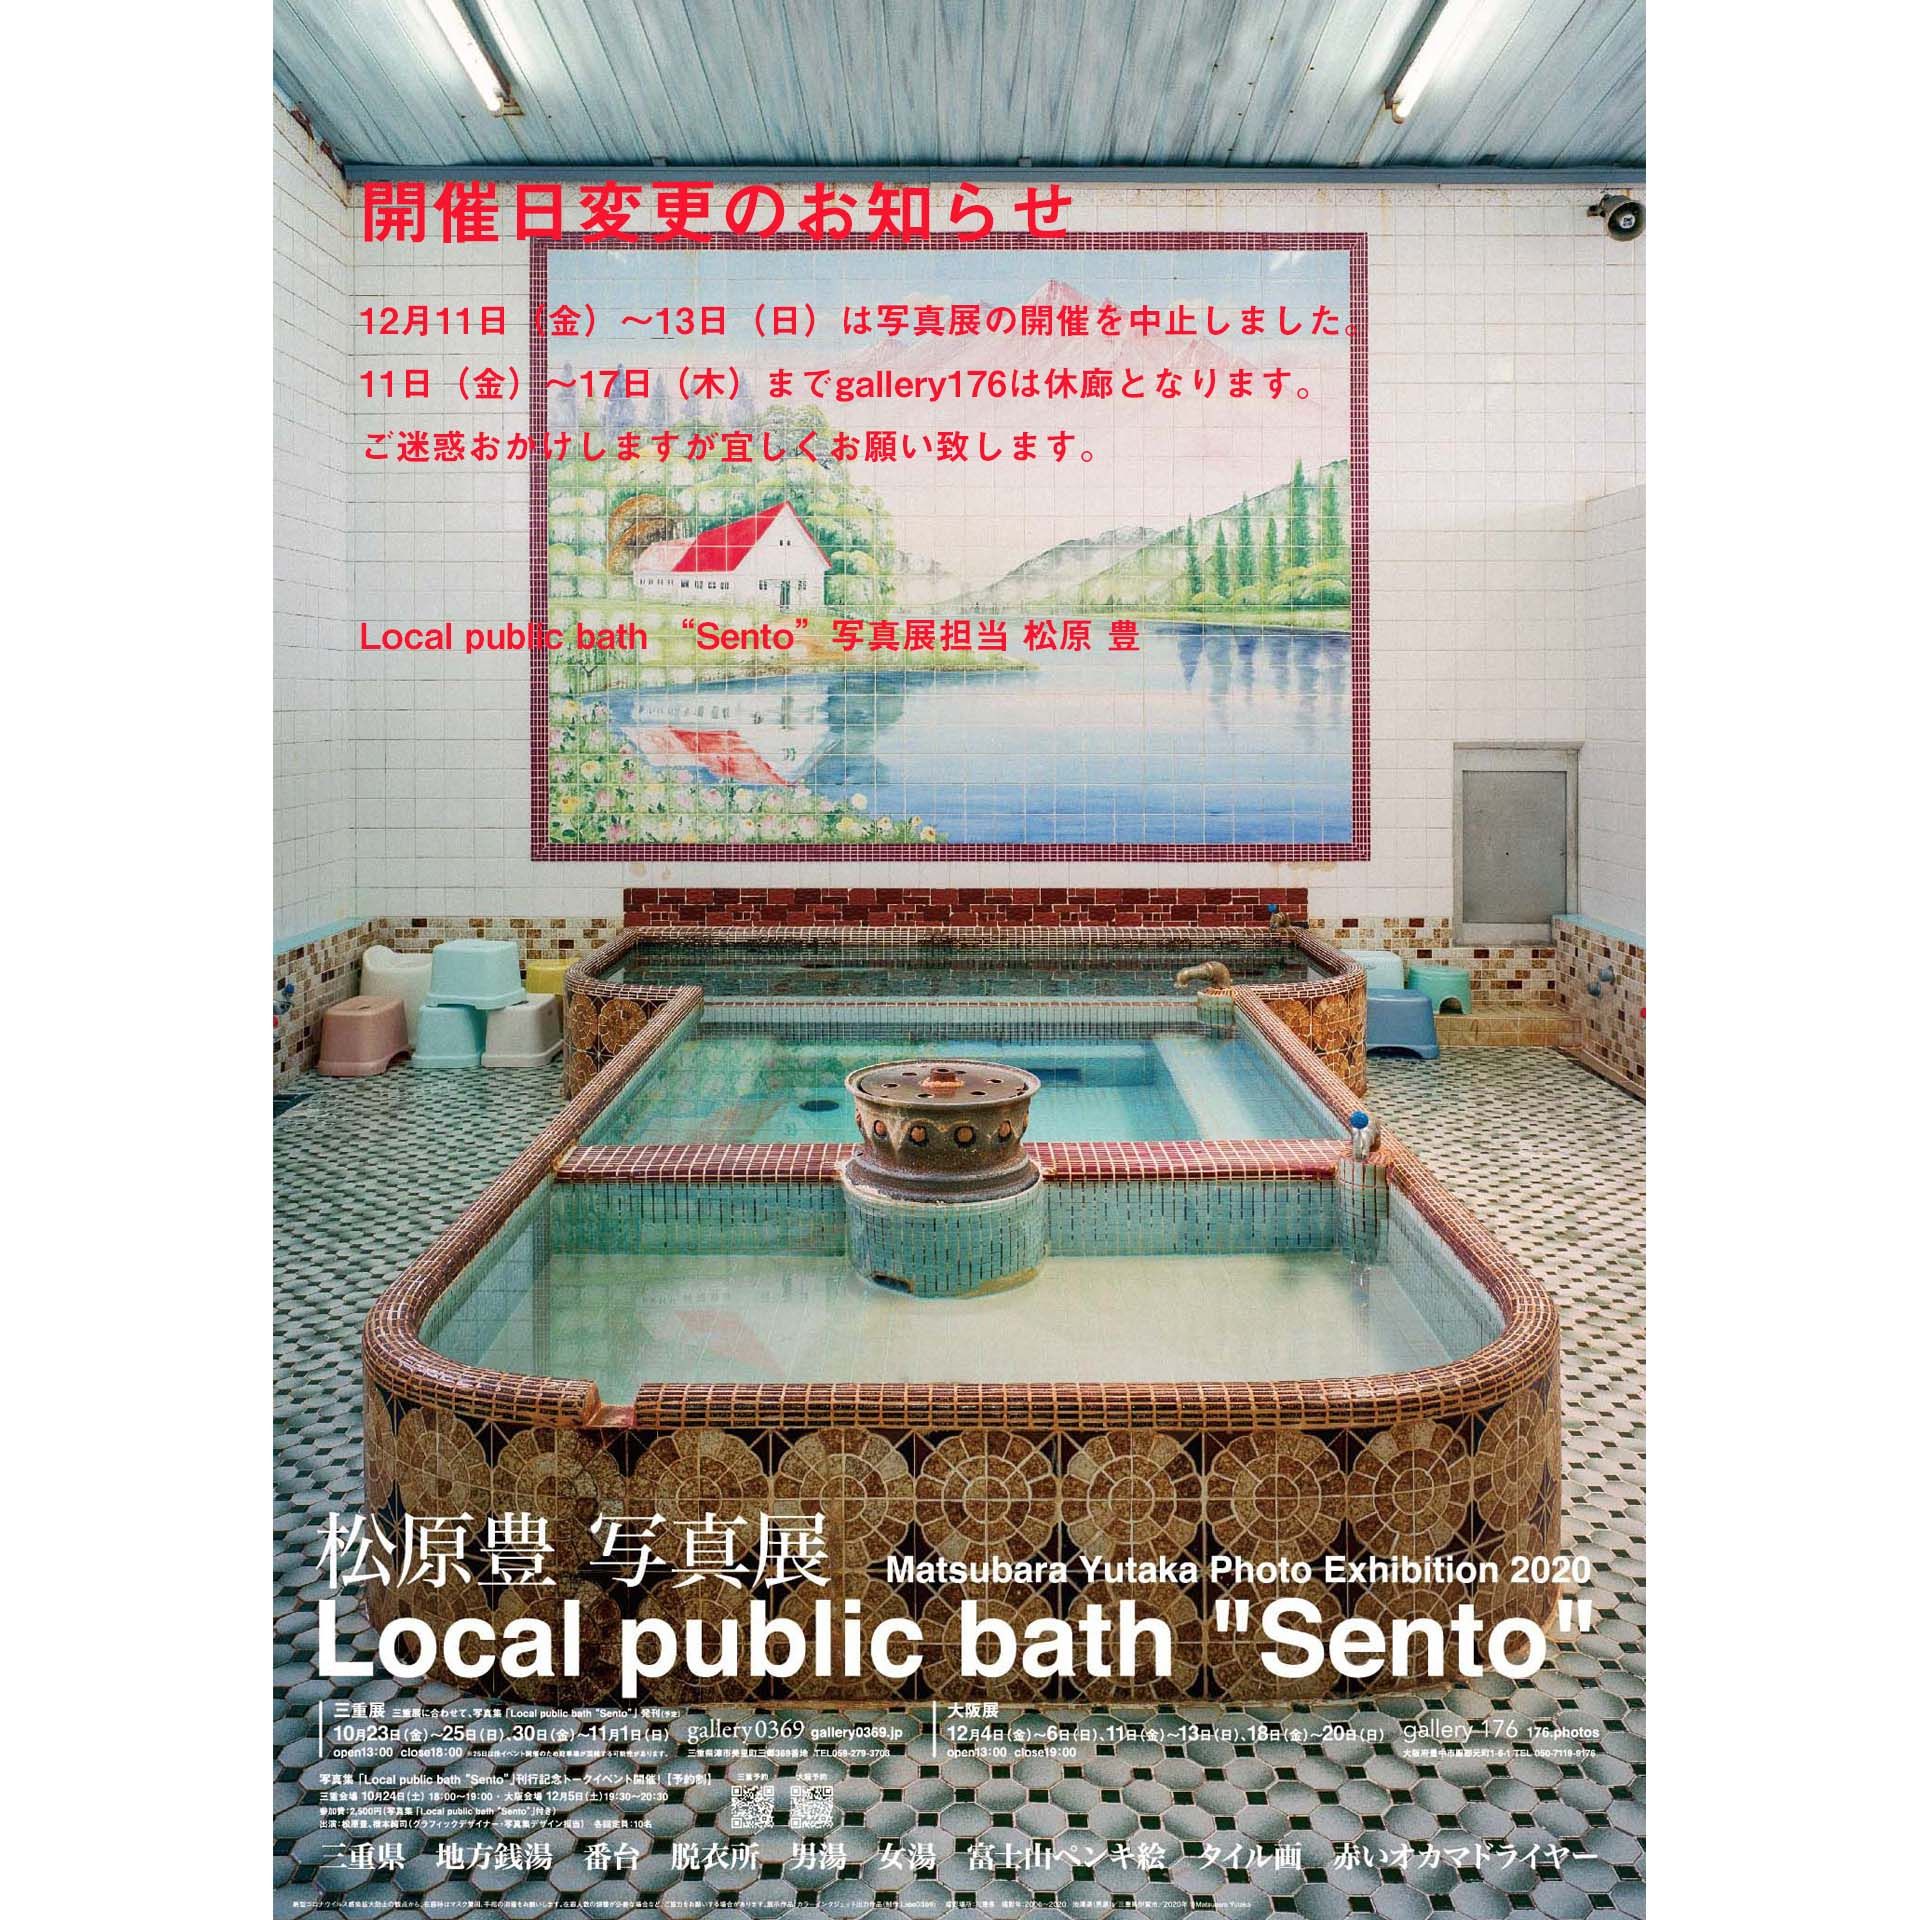 Local public bath "Sento"第2週休廊案内